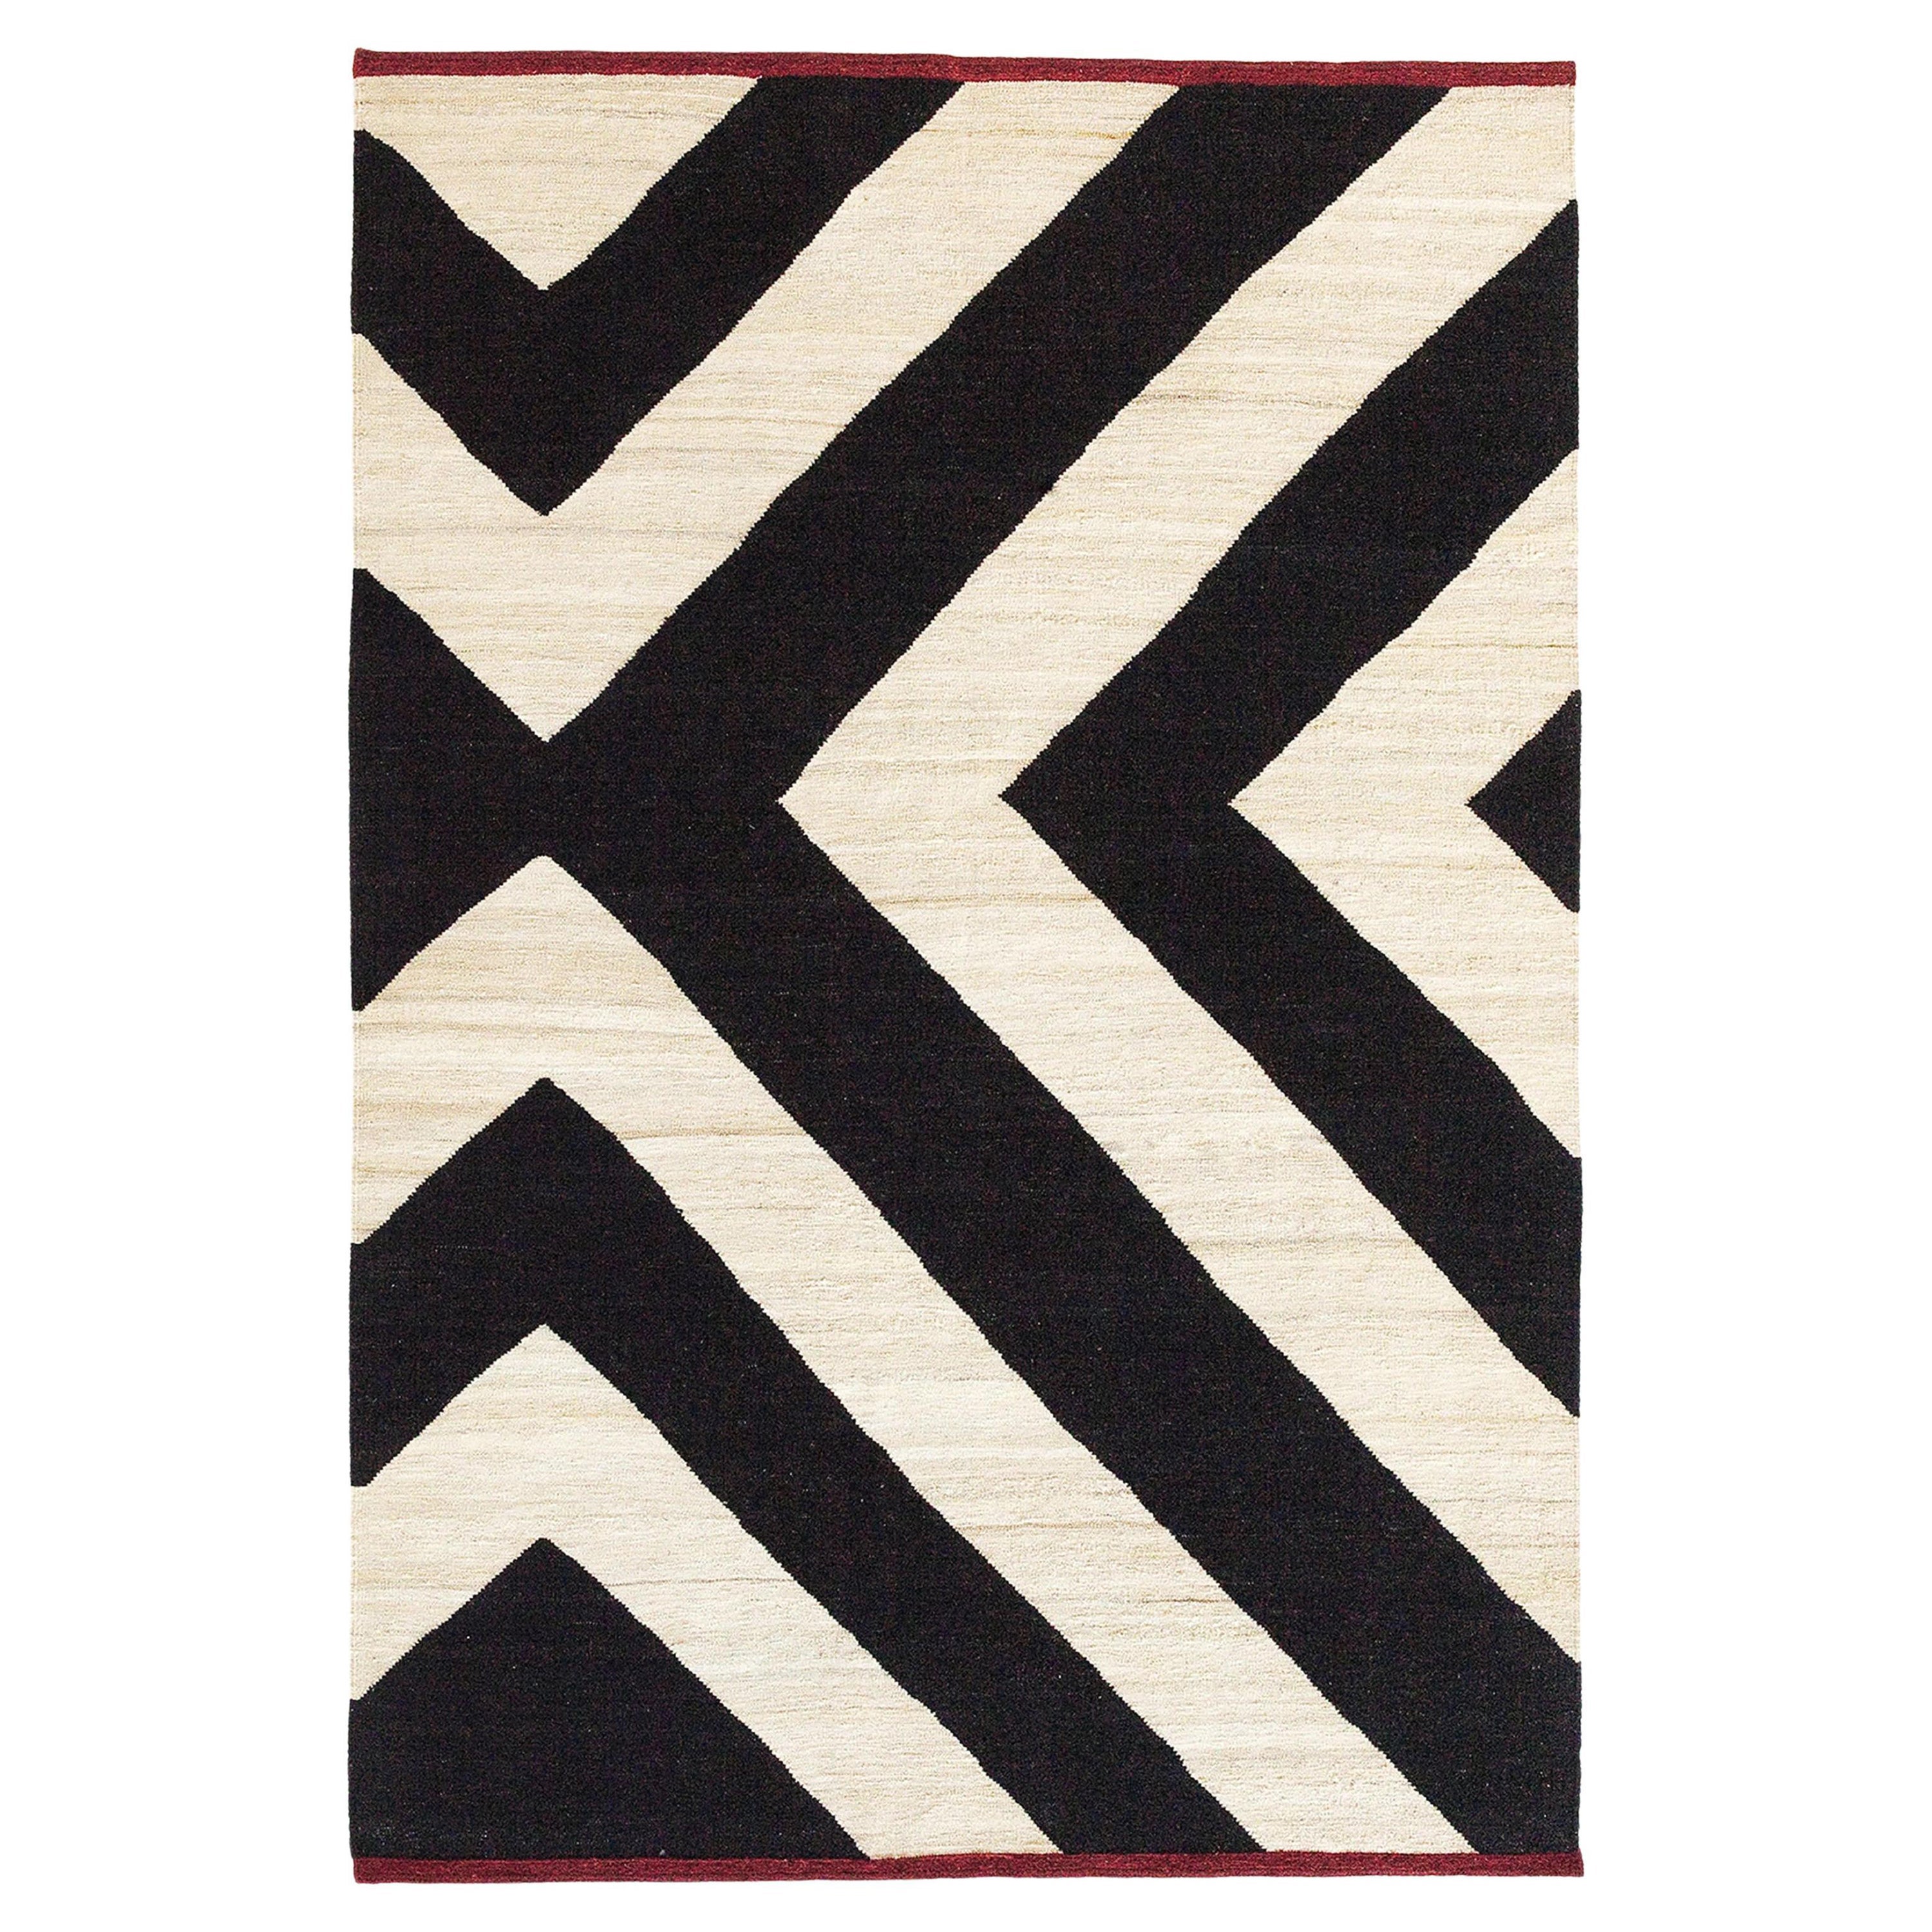 Großer handgewebter Teppich „Mlange Zoom“ von Sybilla für Nanimarquina